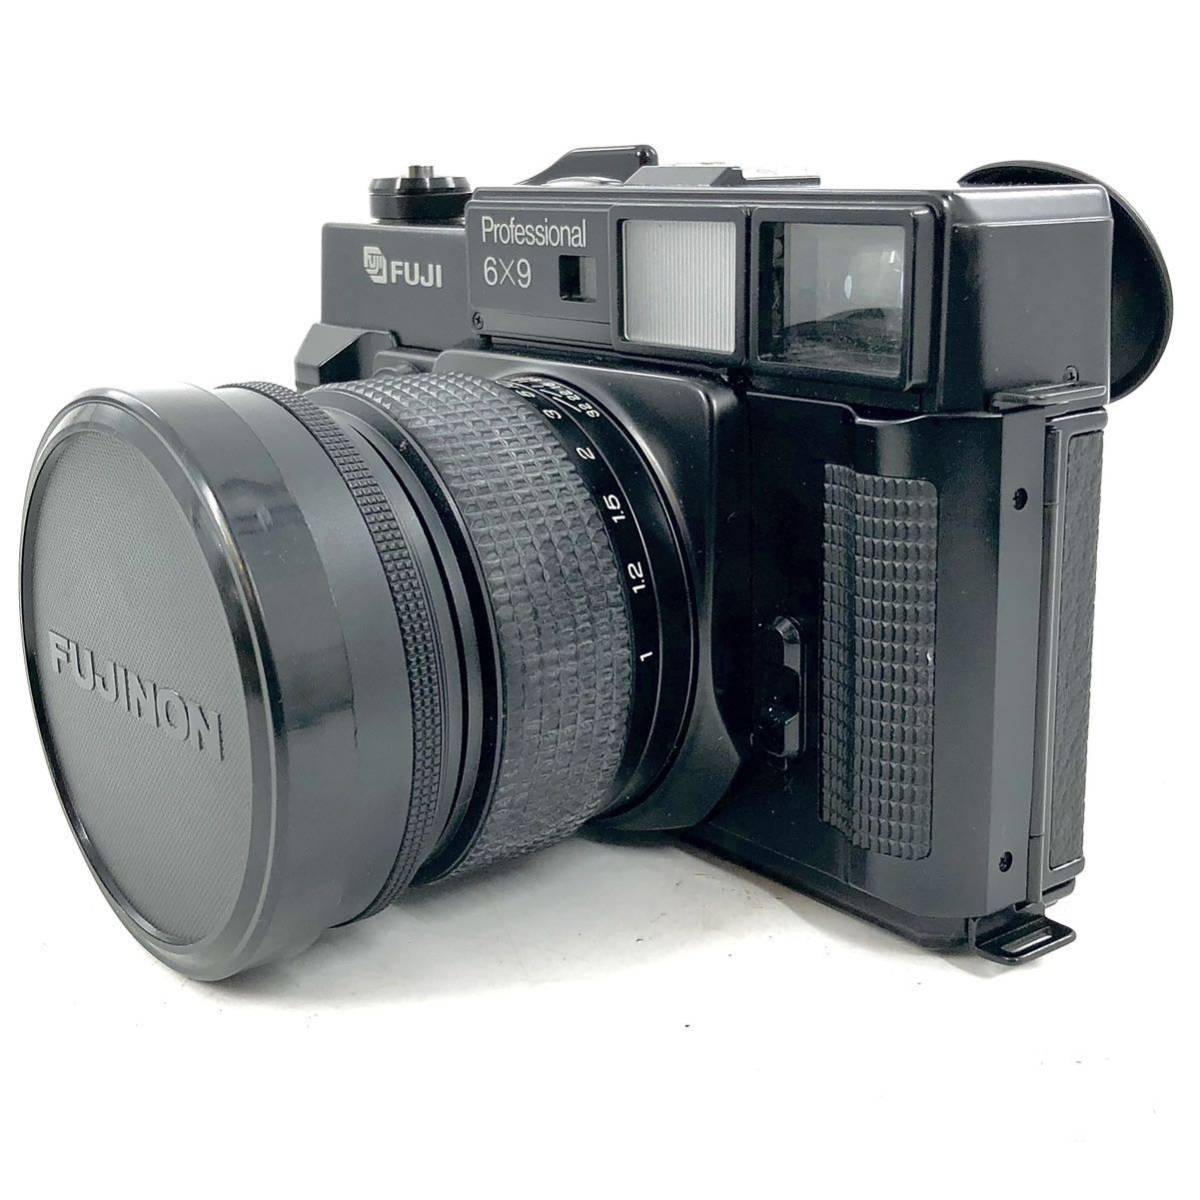 『FUJI▲Professional▲6x9』LB-804 フジ カメラ GW690Ⅱ レンズ FUJINON f=90mm 1:3.5 プロフェショナル 中判フィルムカメラ 富士フィルム_画像3